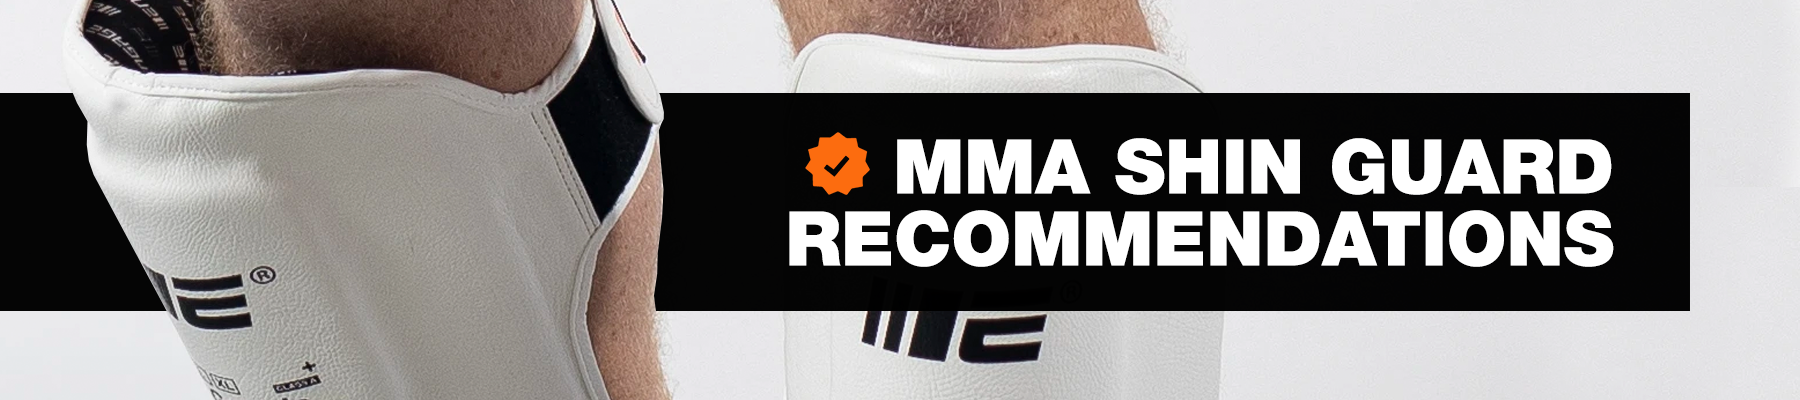 MMA Shin Guard Recommendations